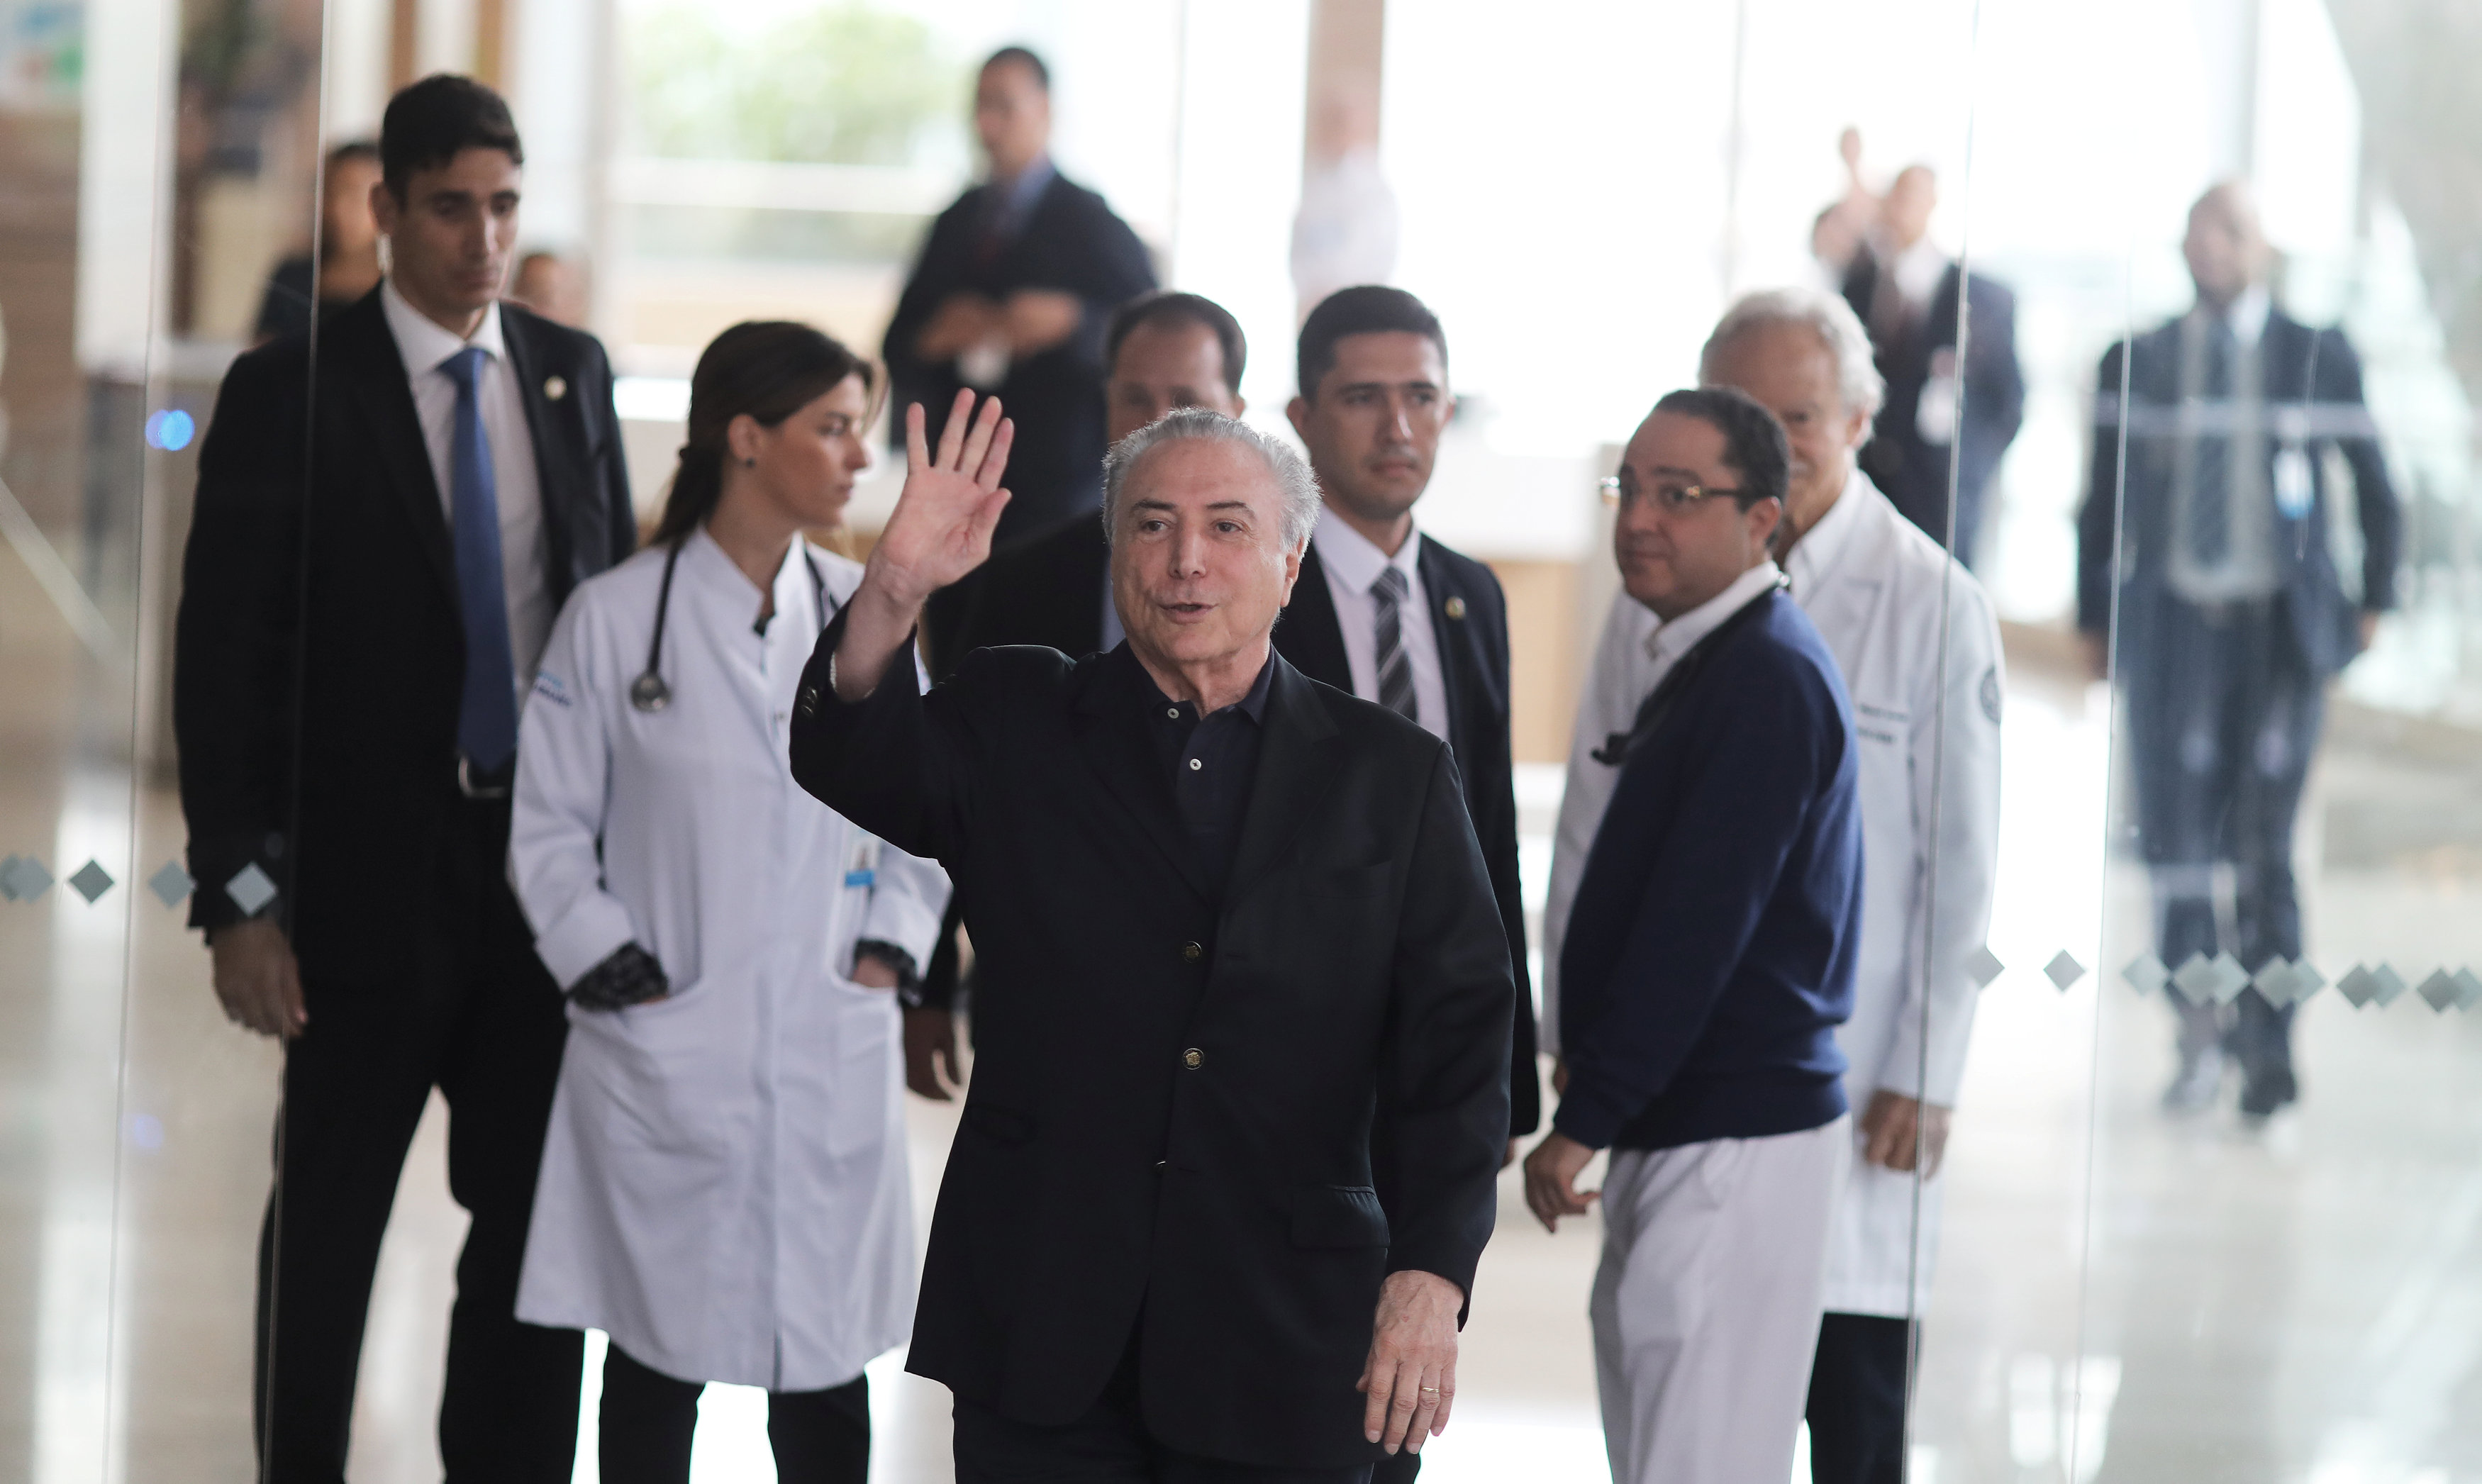 الرئيس البرازيلى يغادر المستشفى بعد إجراء عملية البروستاتا